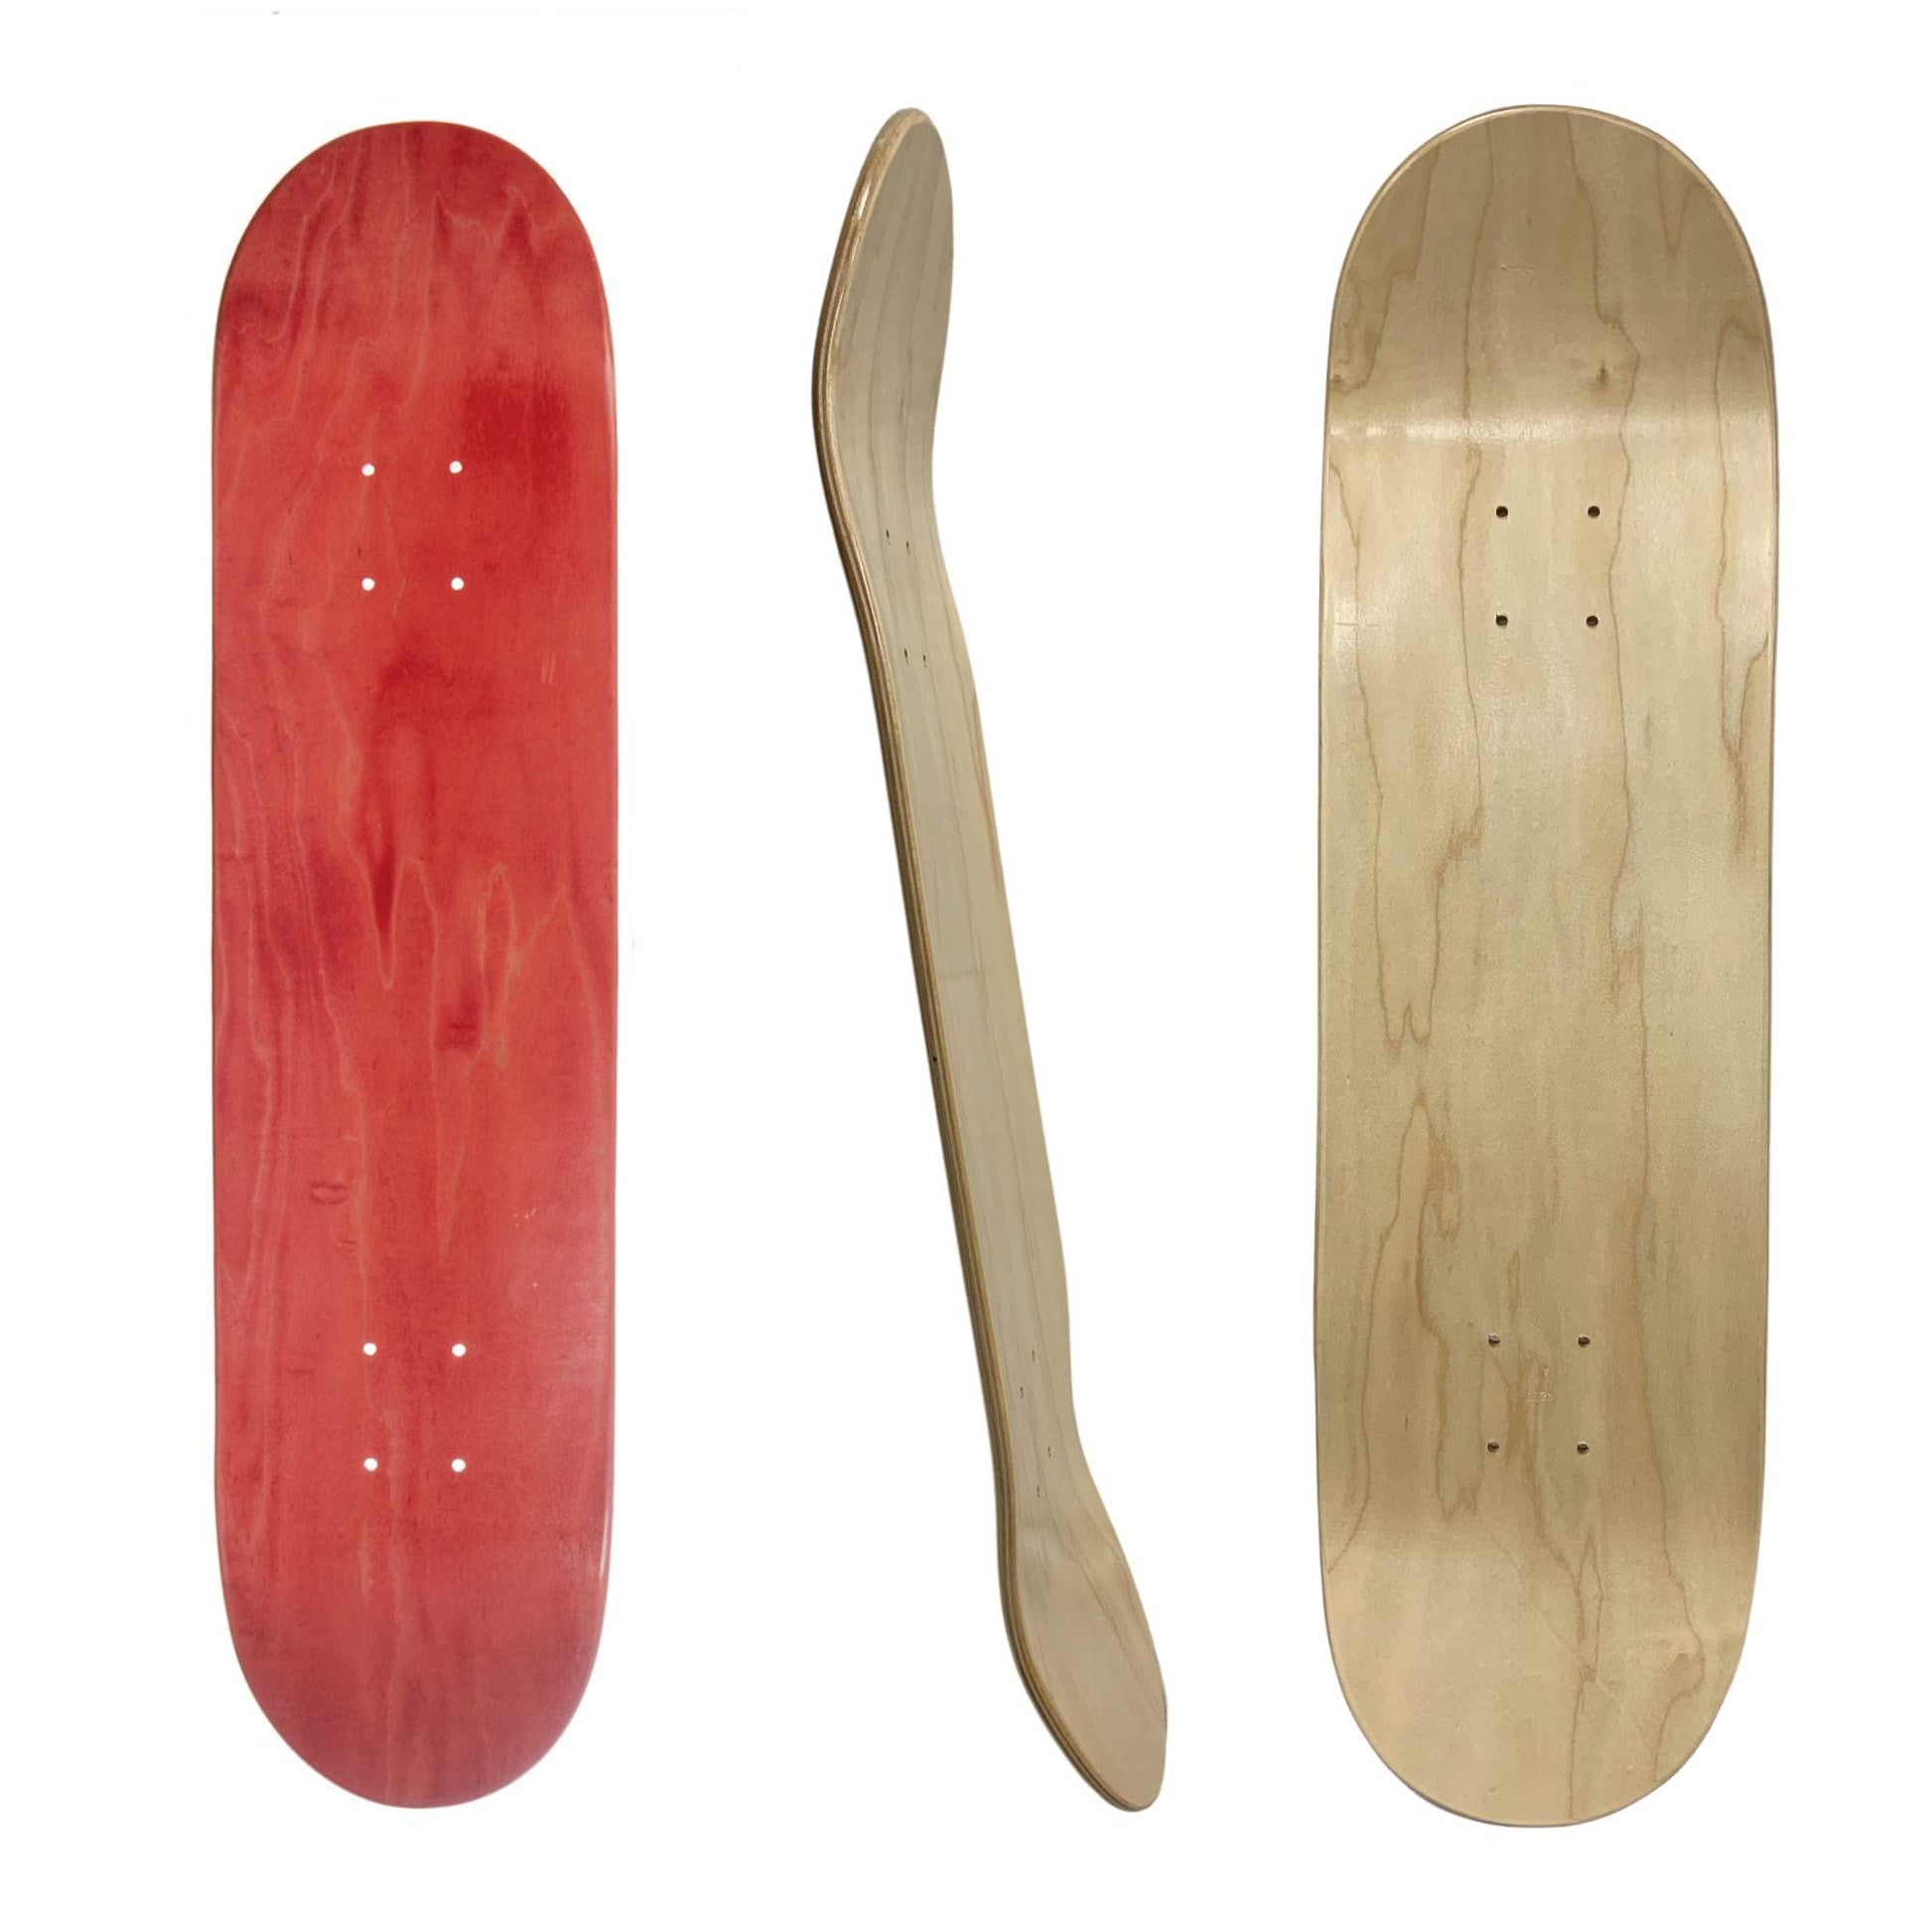 red blank maple wood skateboard deck